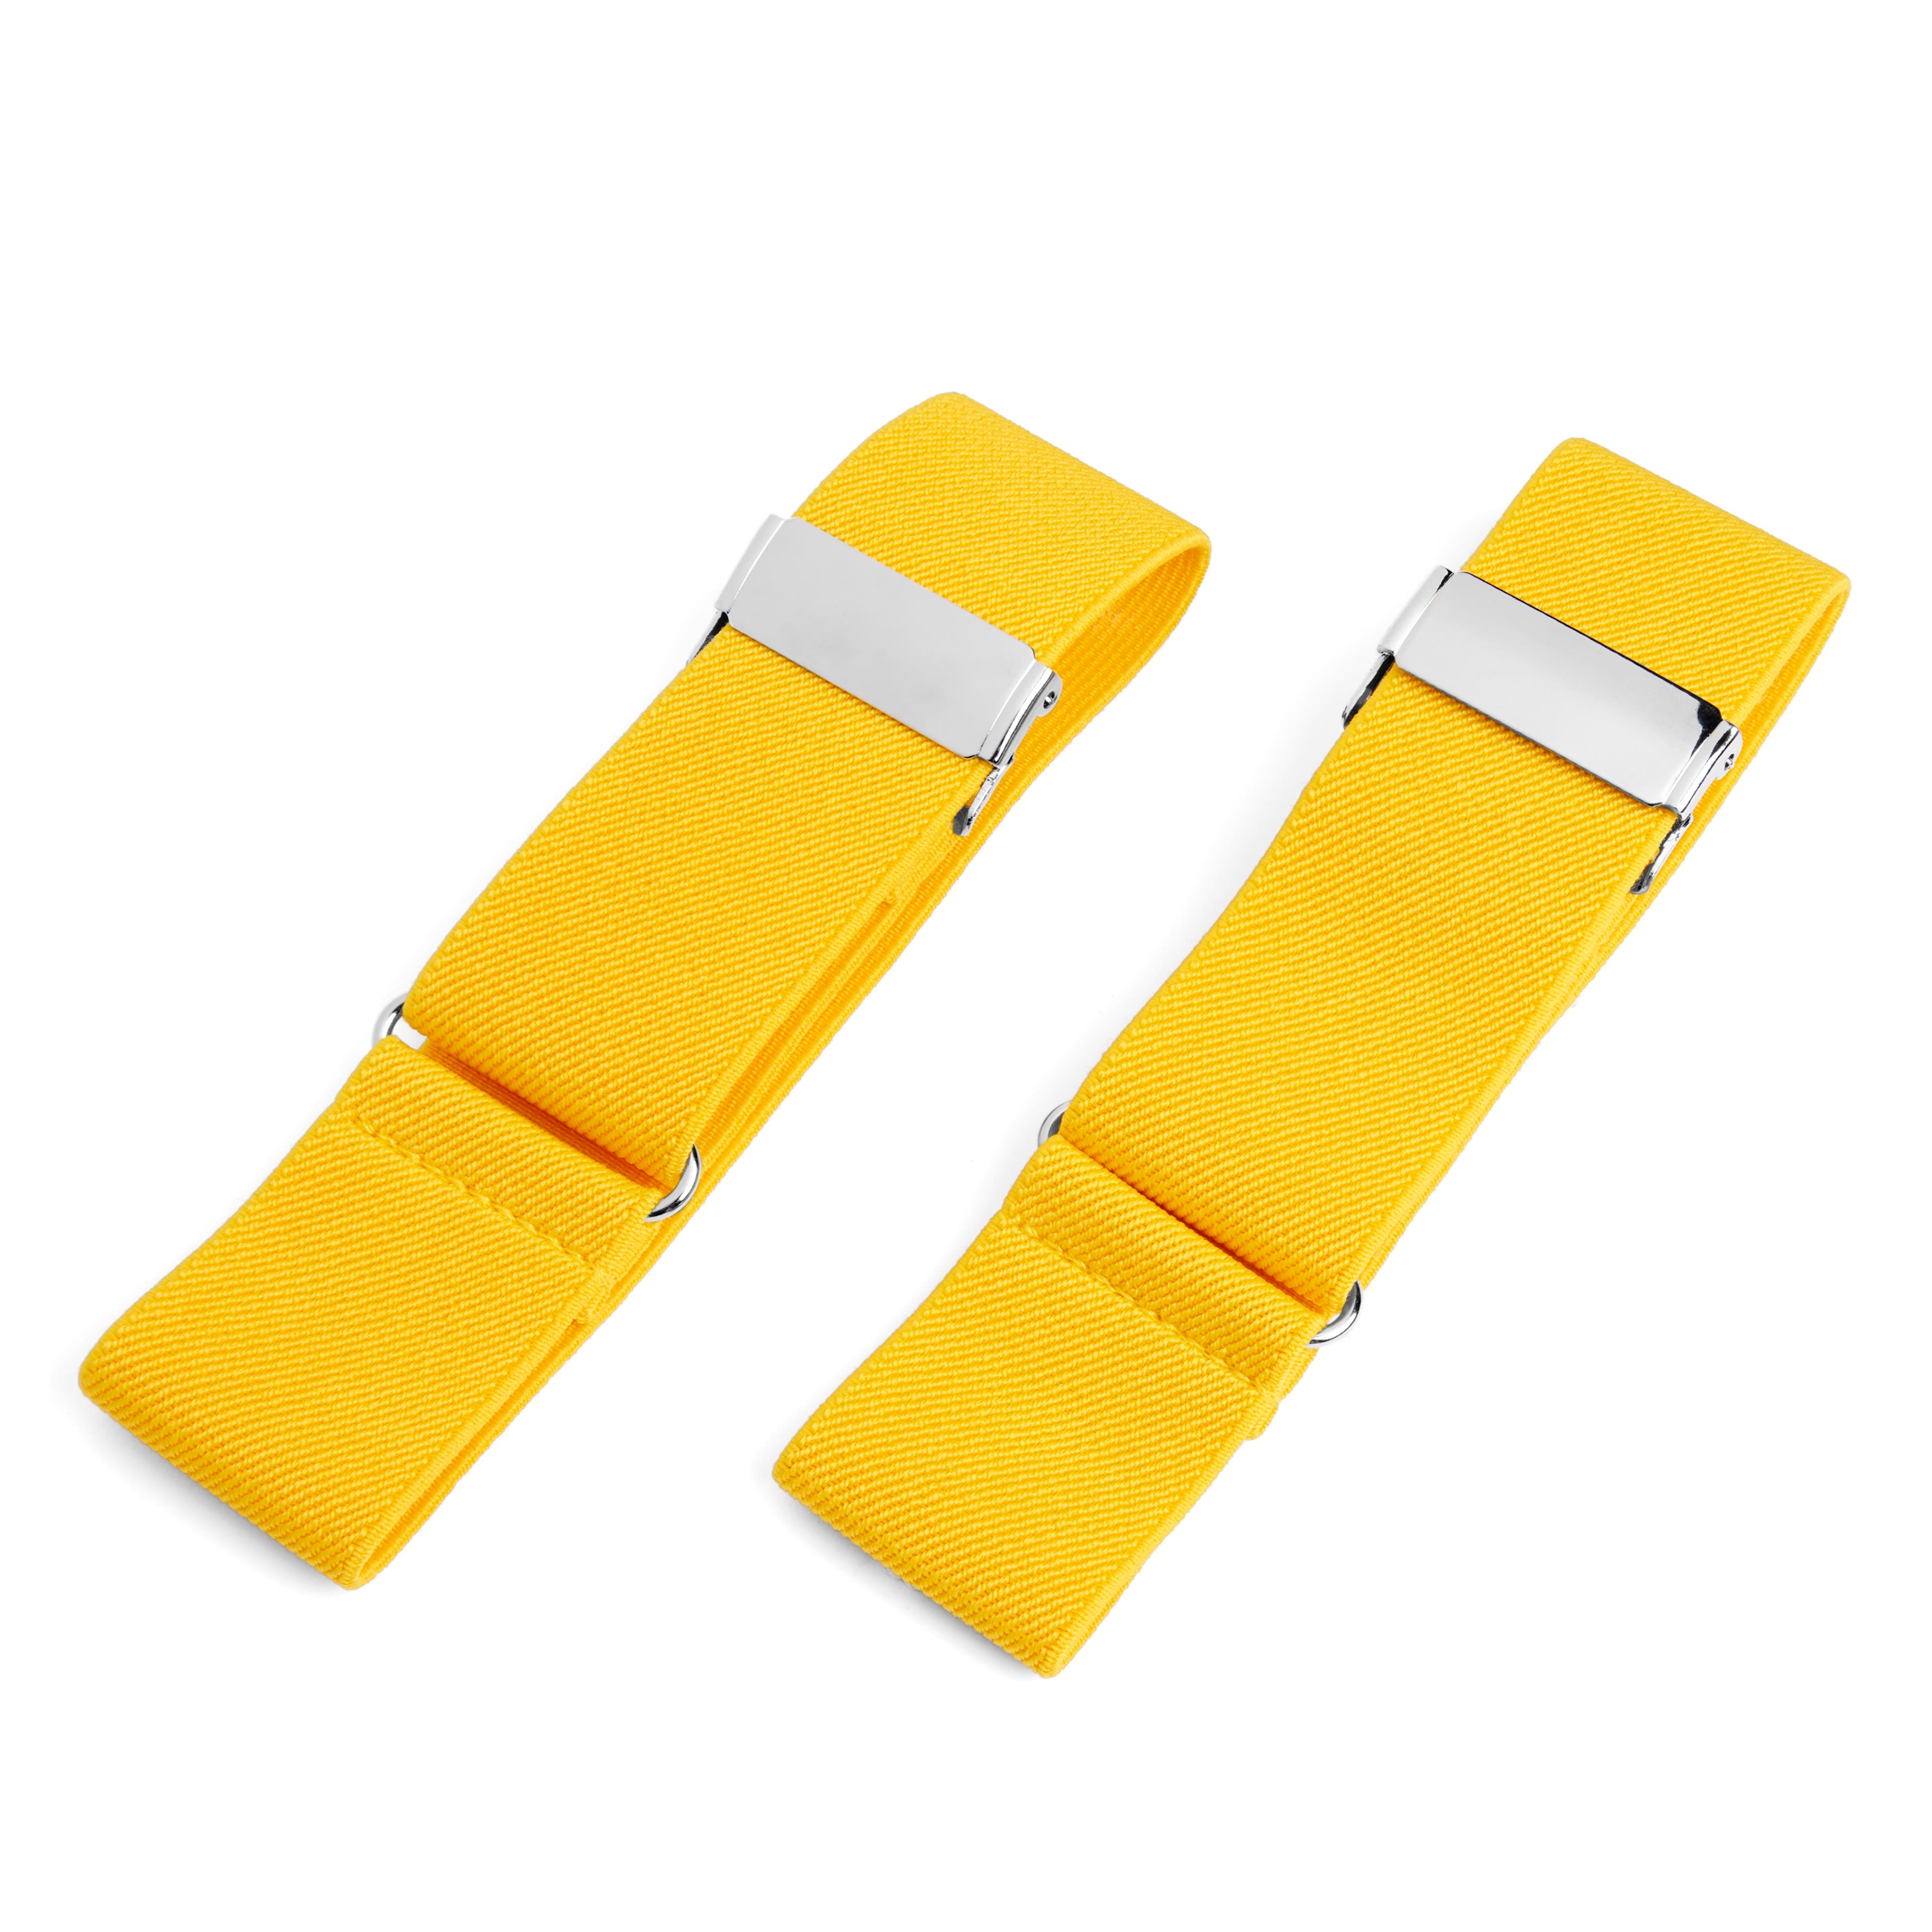 Wide Golden Yellow Sleeve Garters 